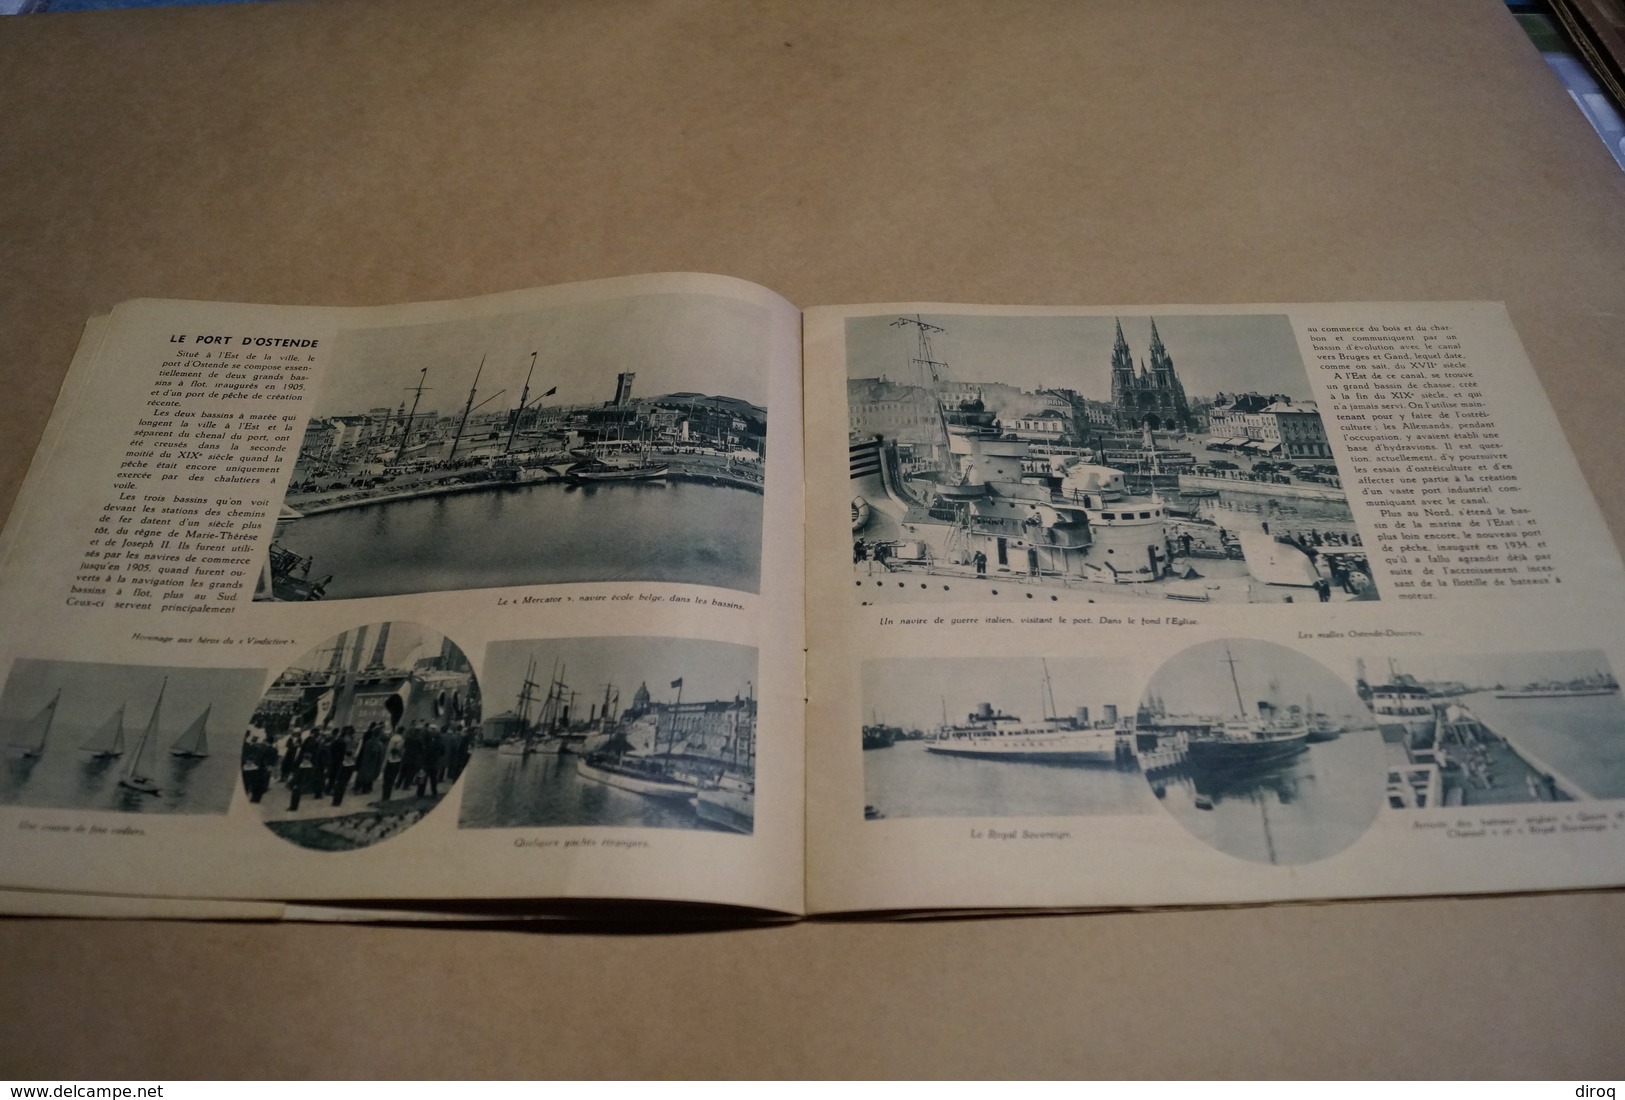 ancien ouvrage Exposition de Liège 1930,Ostende reine des plages,complet 26 Cm. sur 22 Cm.